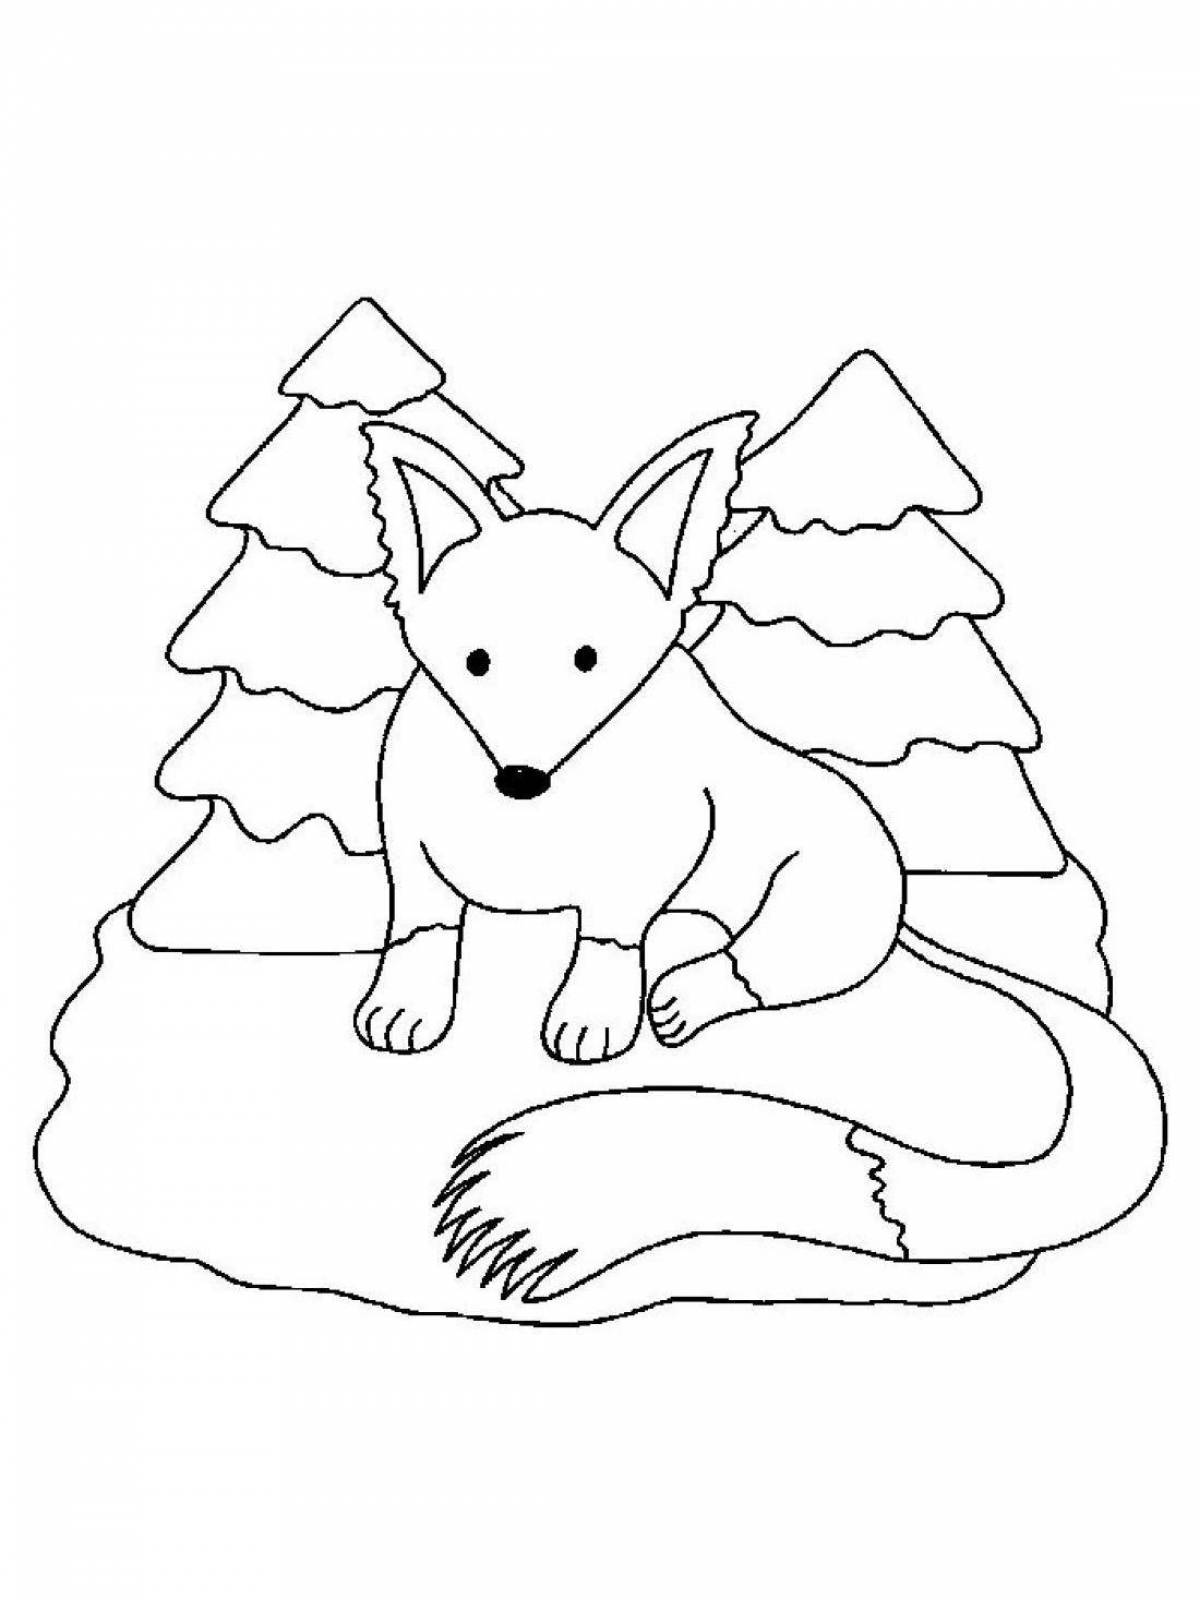 Calm fox in winter coloring book